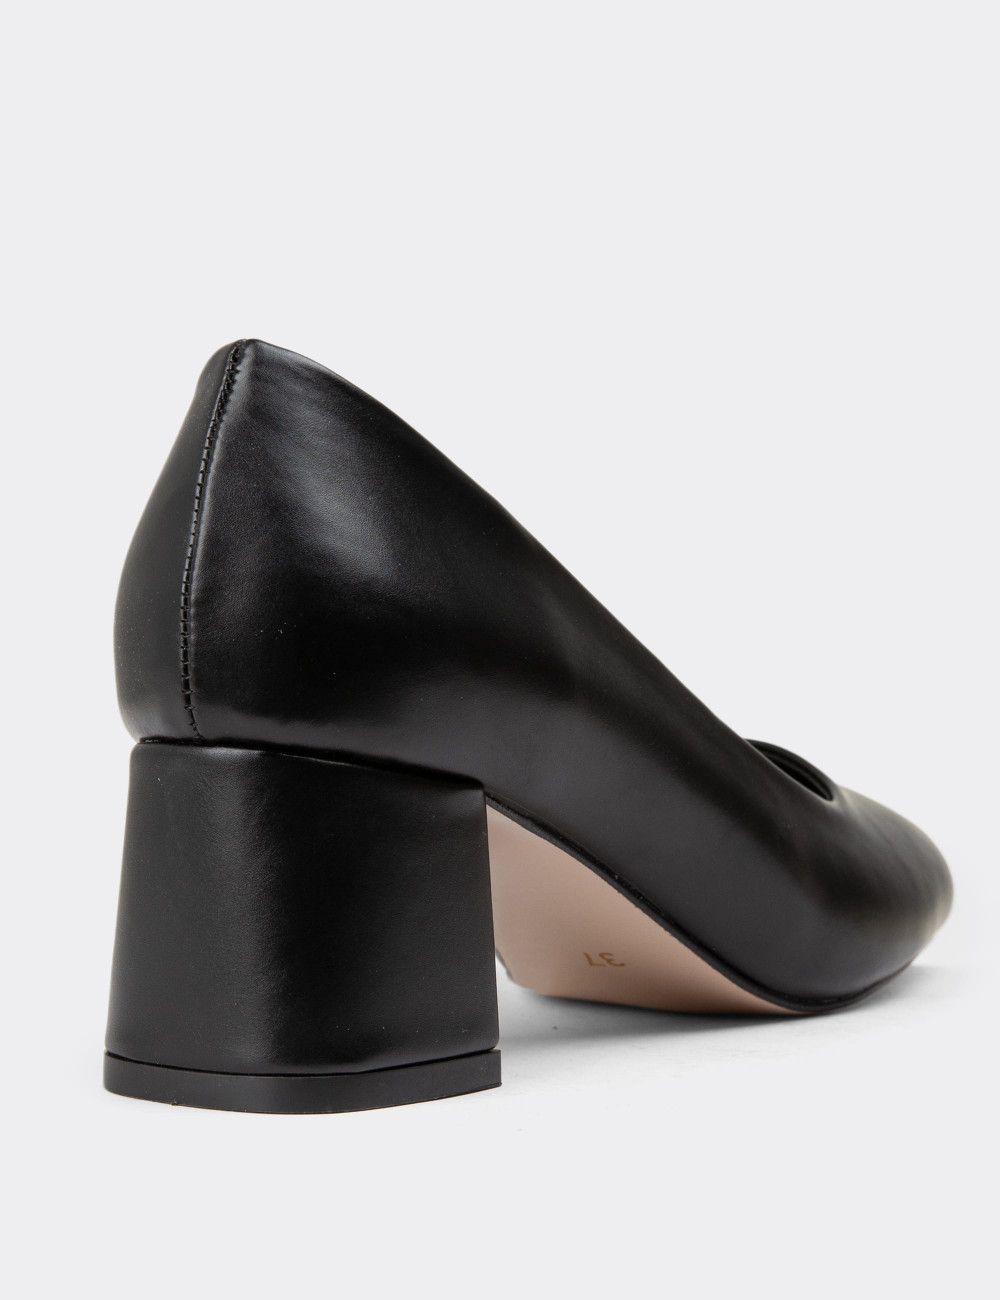 Siyah Günlük Topuklu Kadın Ayakkabı - K0893ZSYHC01